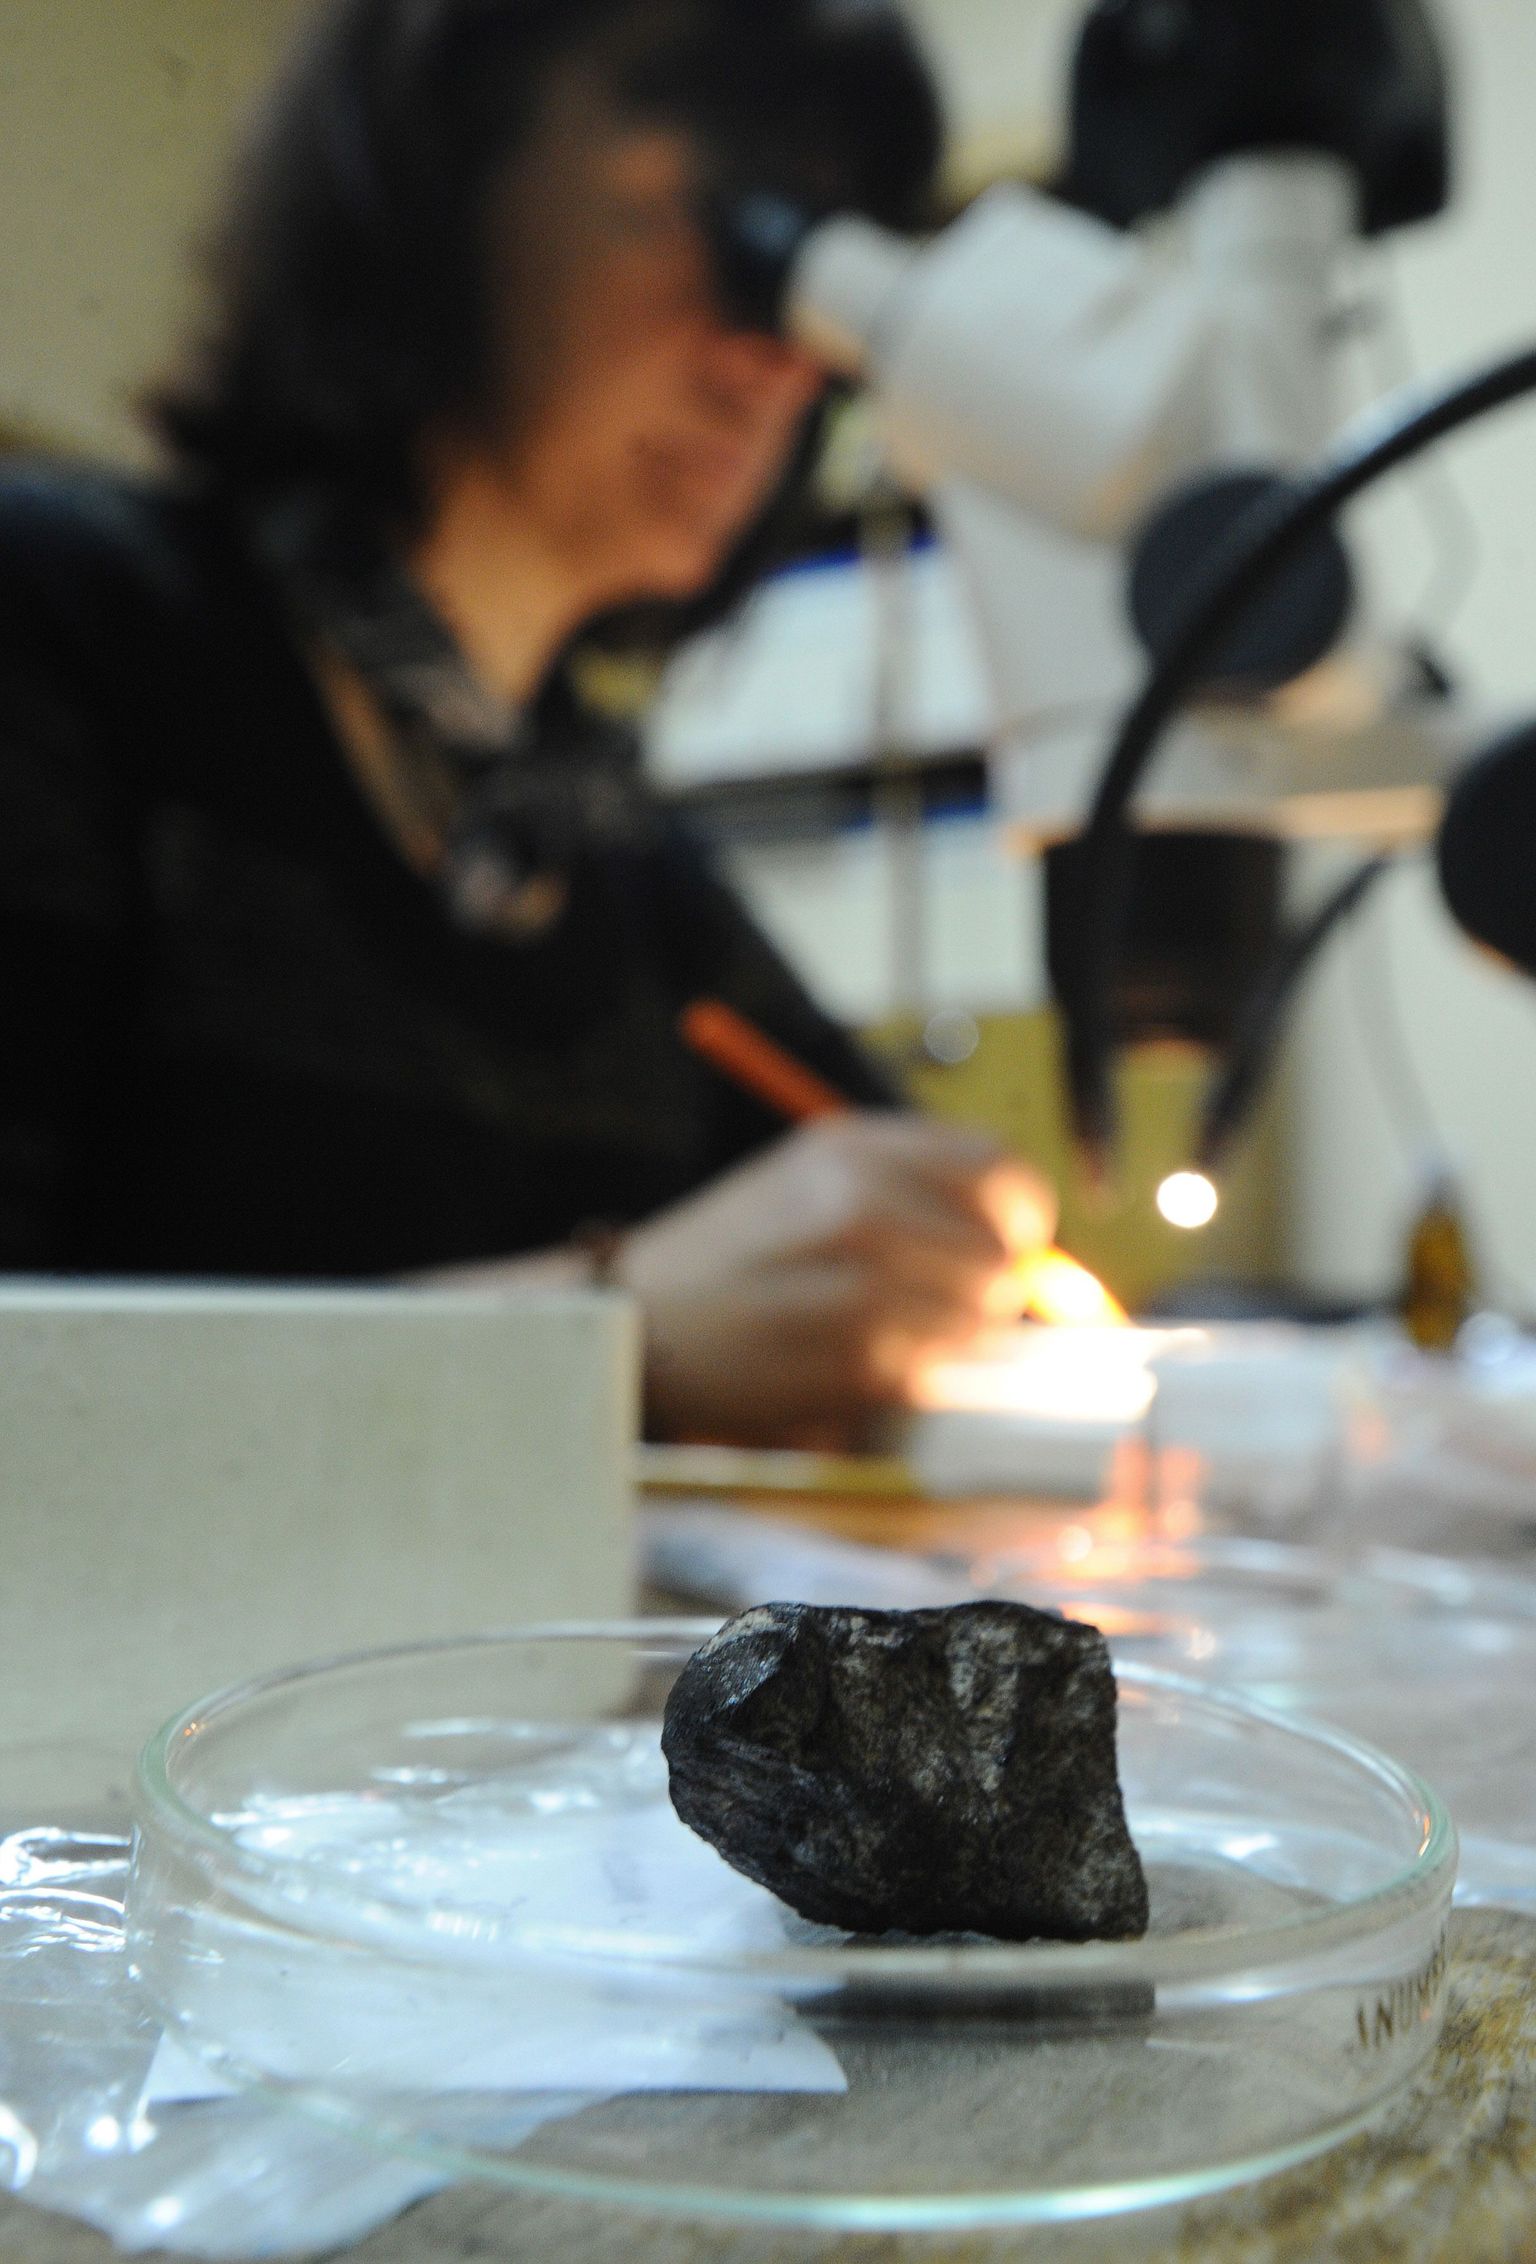 Meteoriiditükkide uurimine Moskvas  Vernadski-nimelises instituudis.